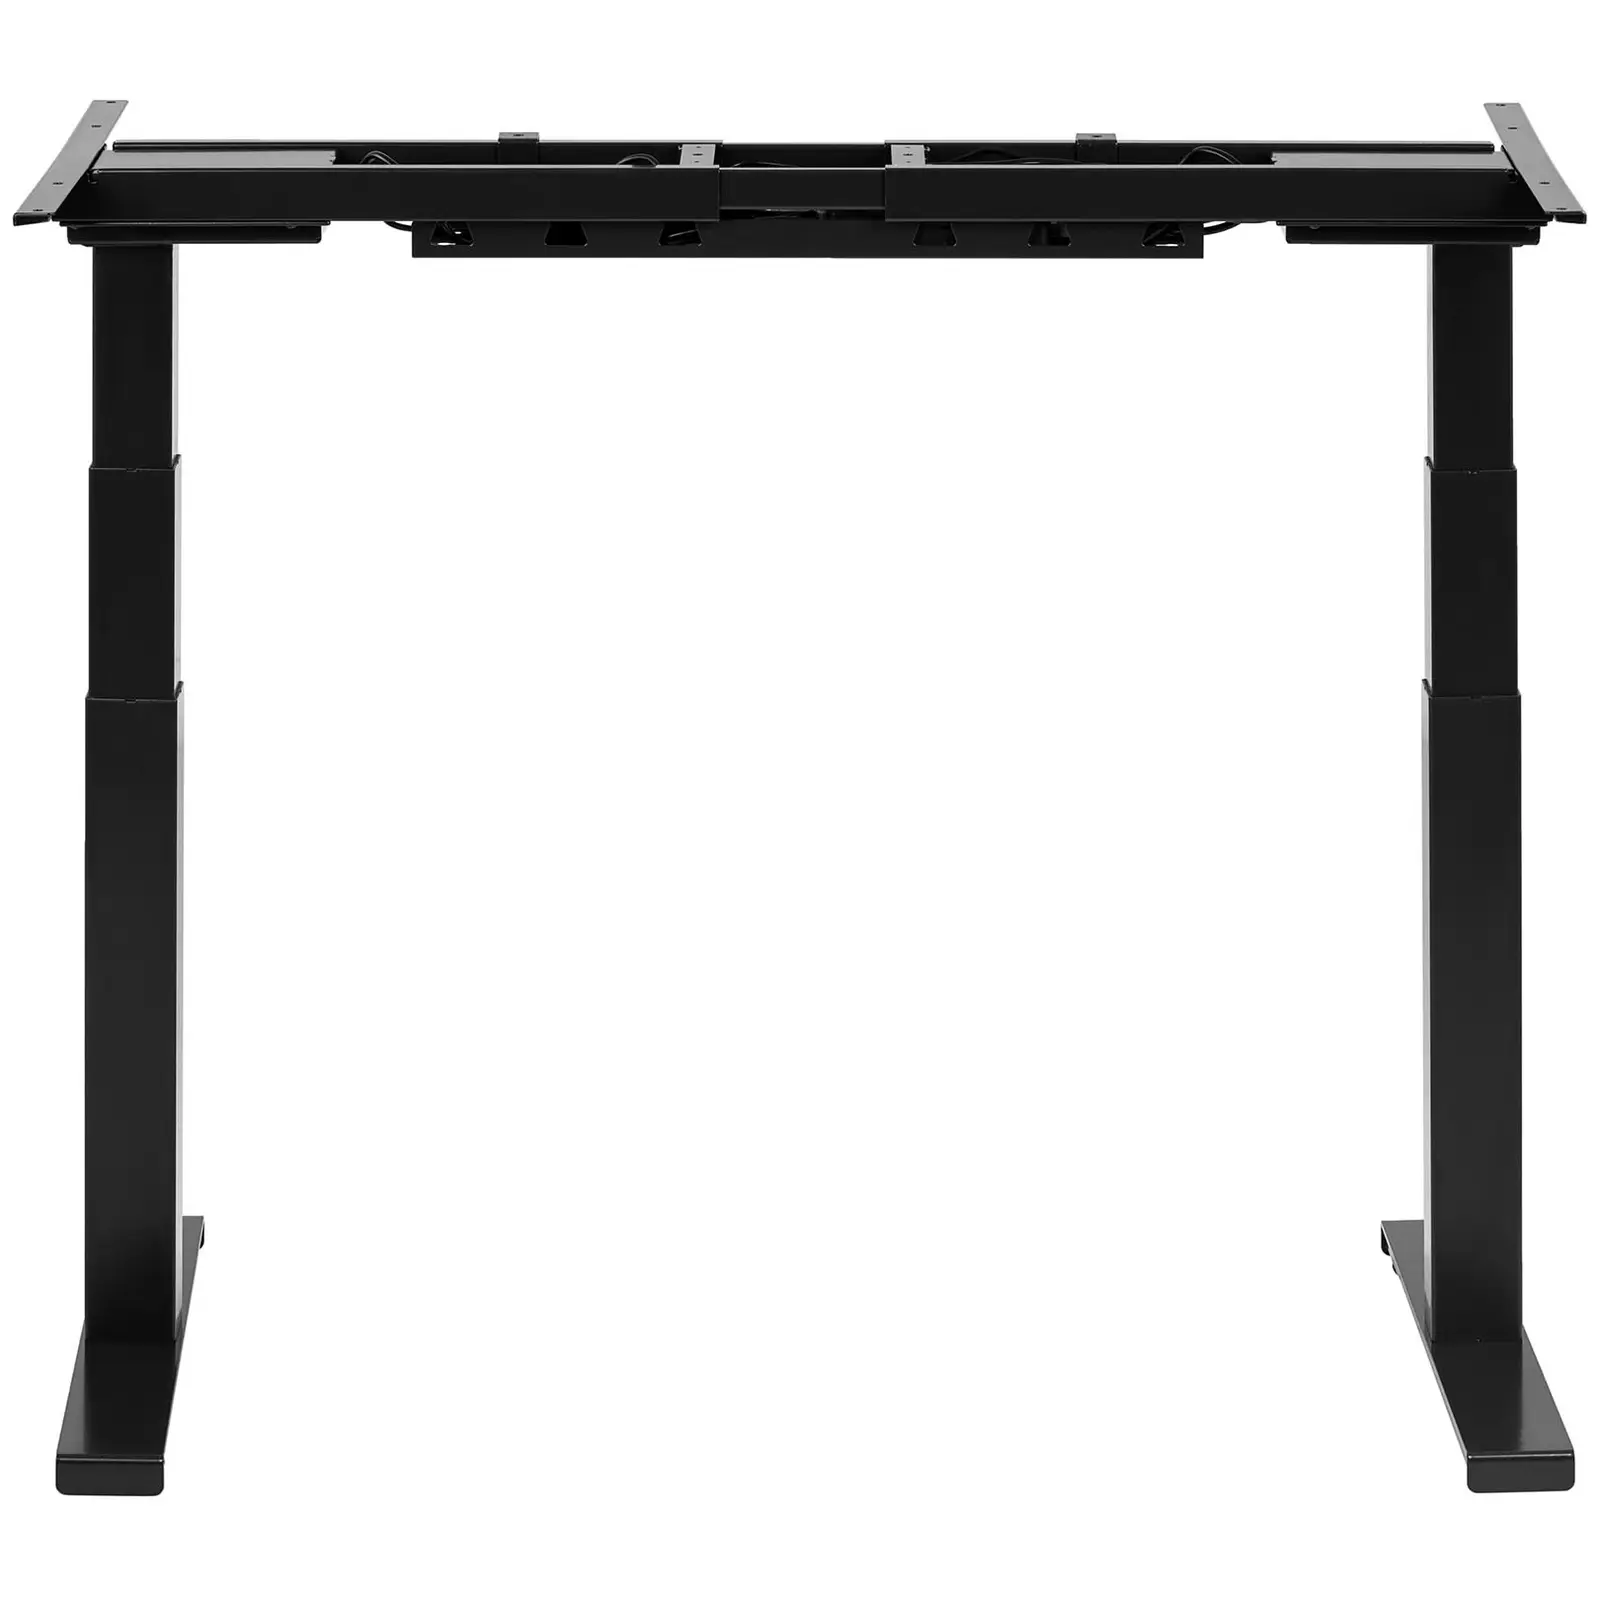 Výškově nastavitelný rám stolu - 200 W - 125 kg - černý